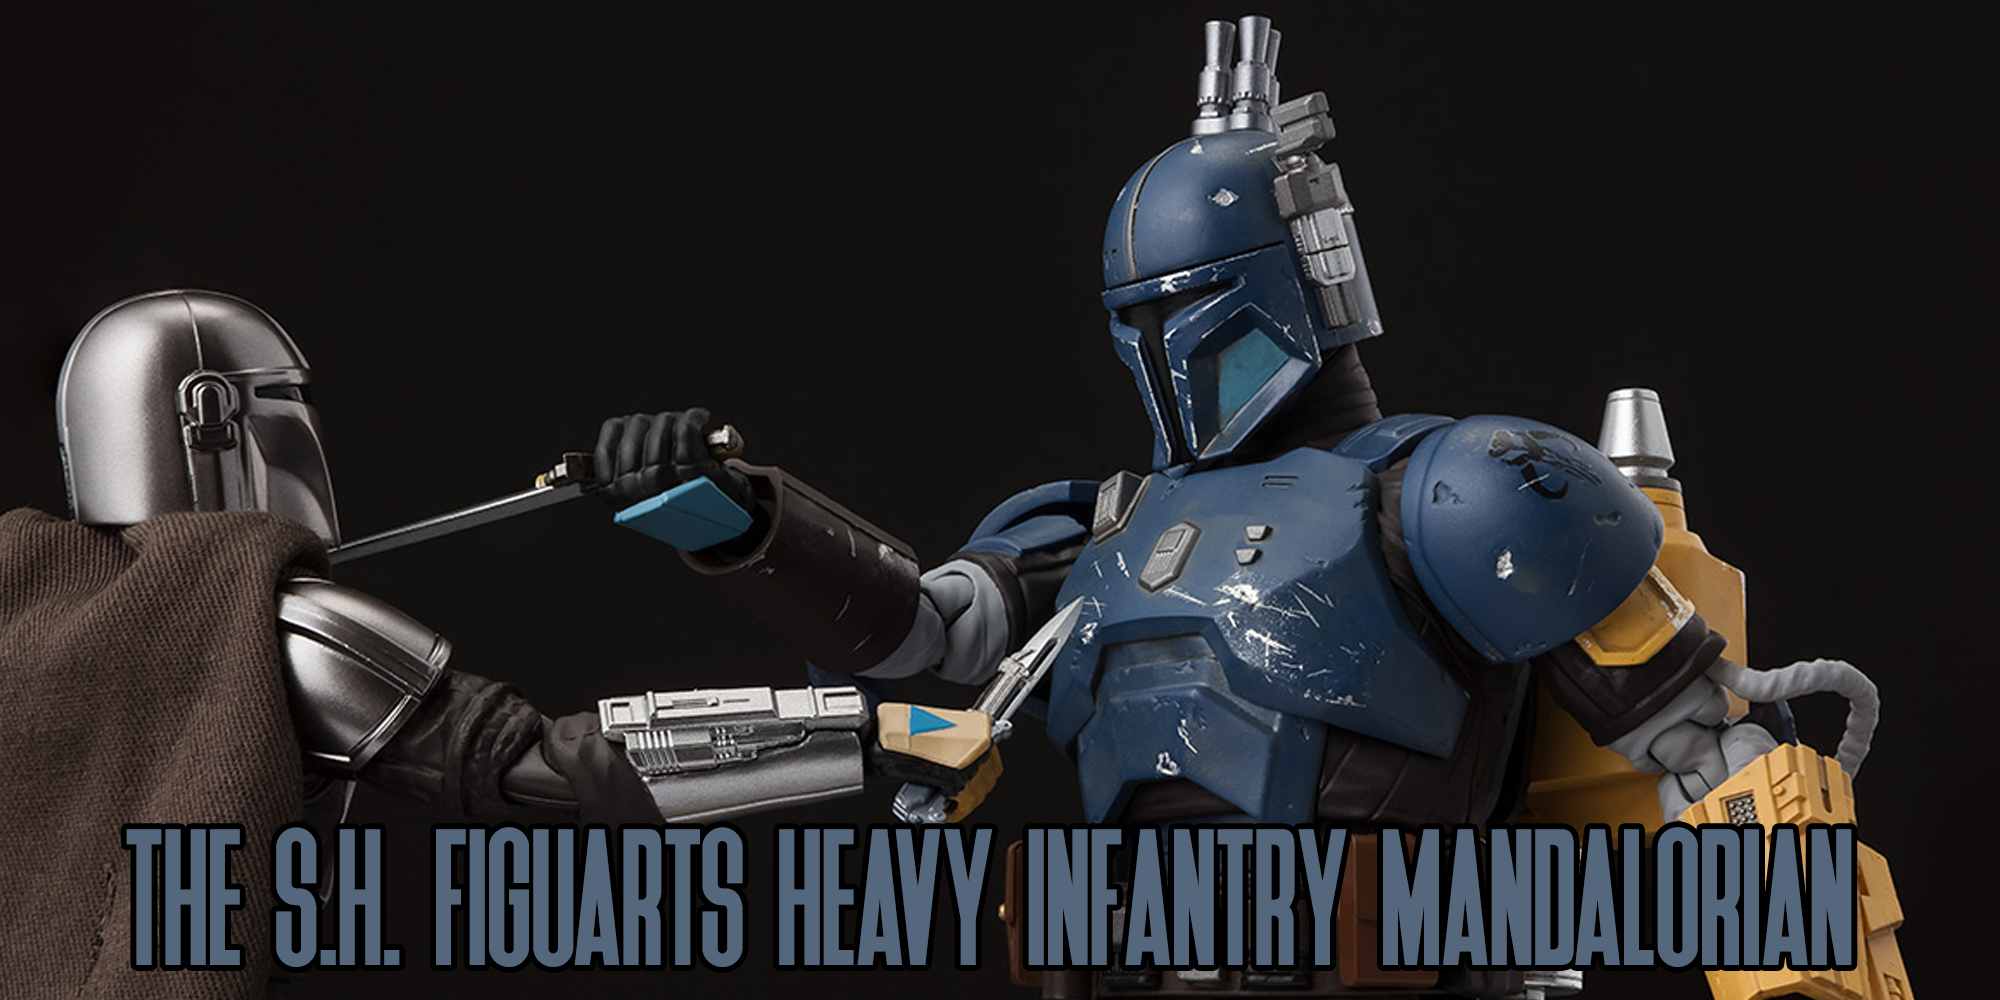 Bandai's S.H. Figuarts Heavy Infantry Mandalorian Revealed